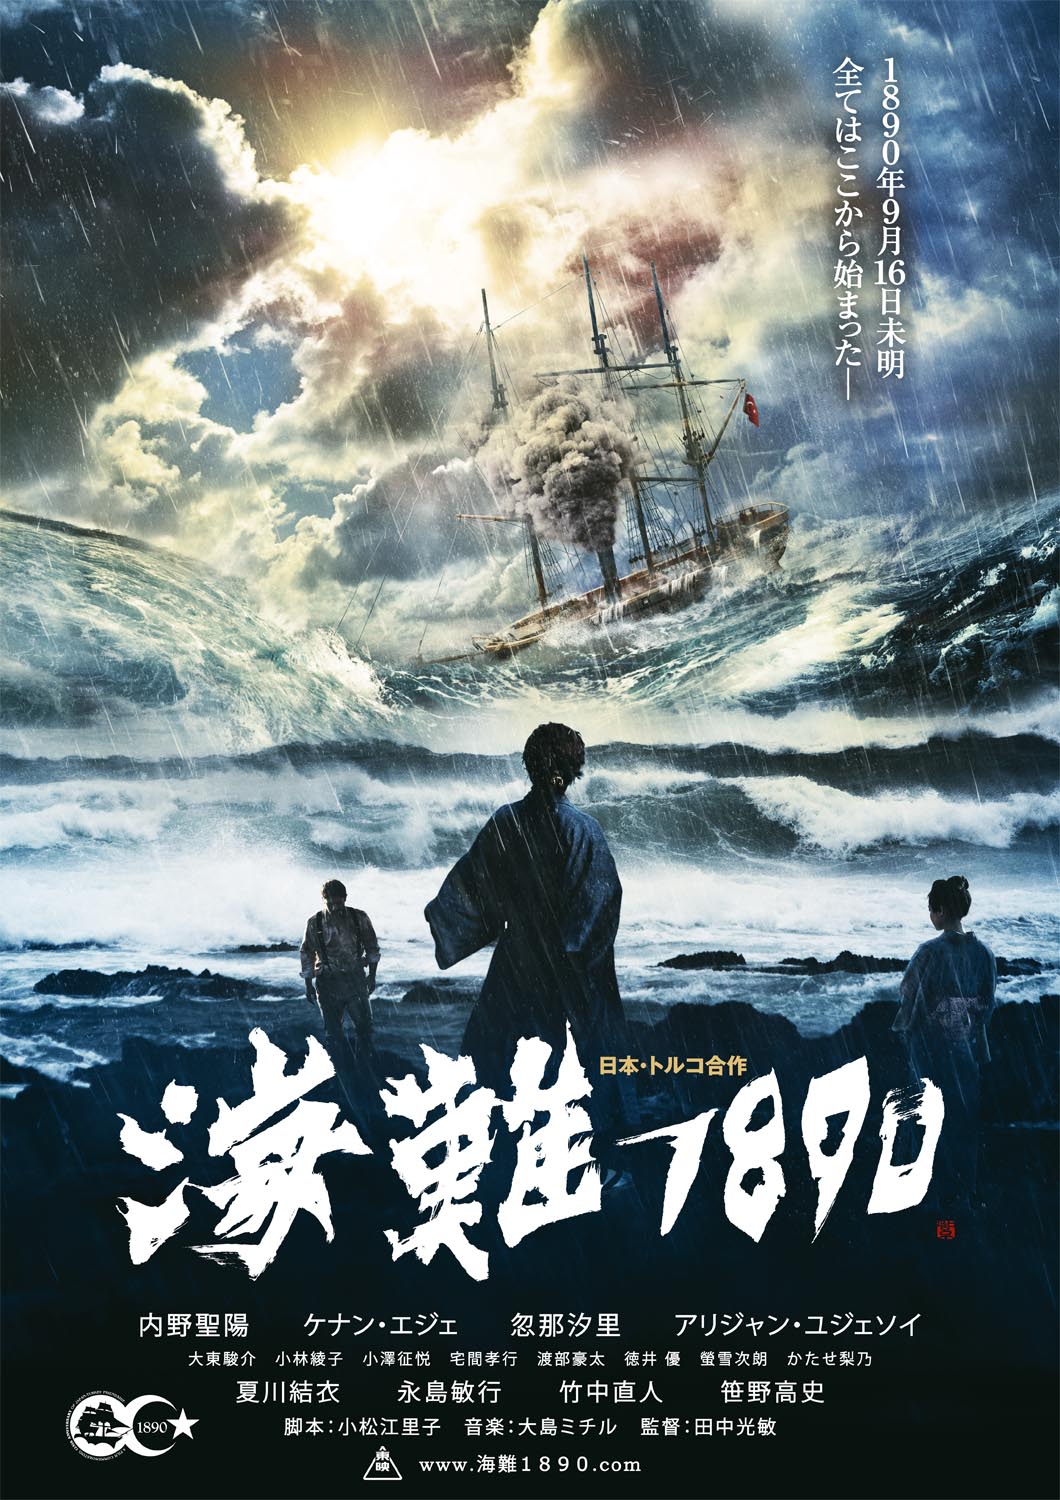 125 YEARS MEMORY poster (海難１８９０)